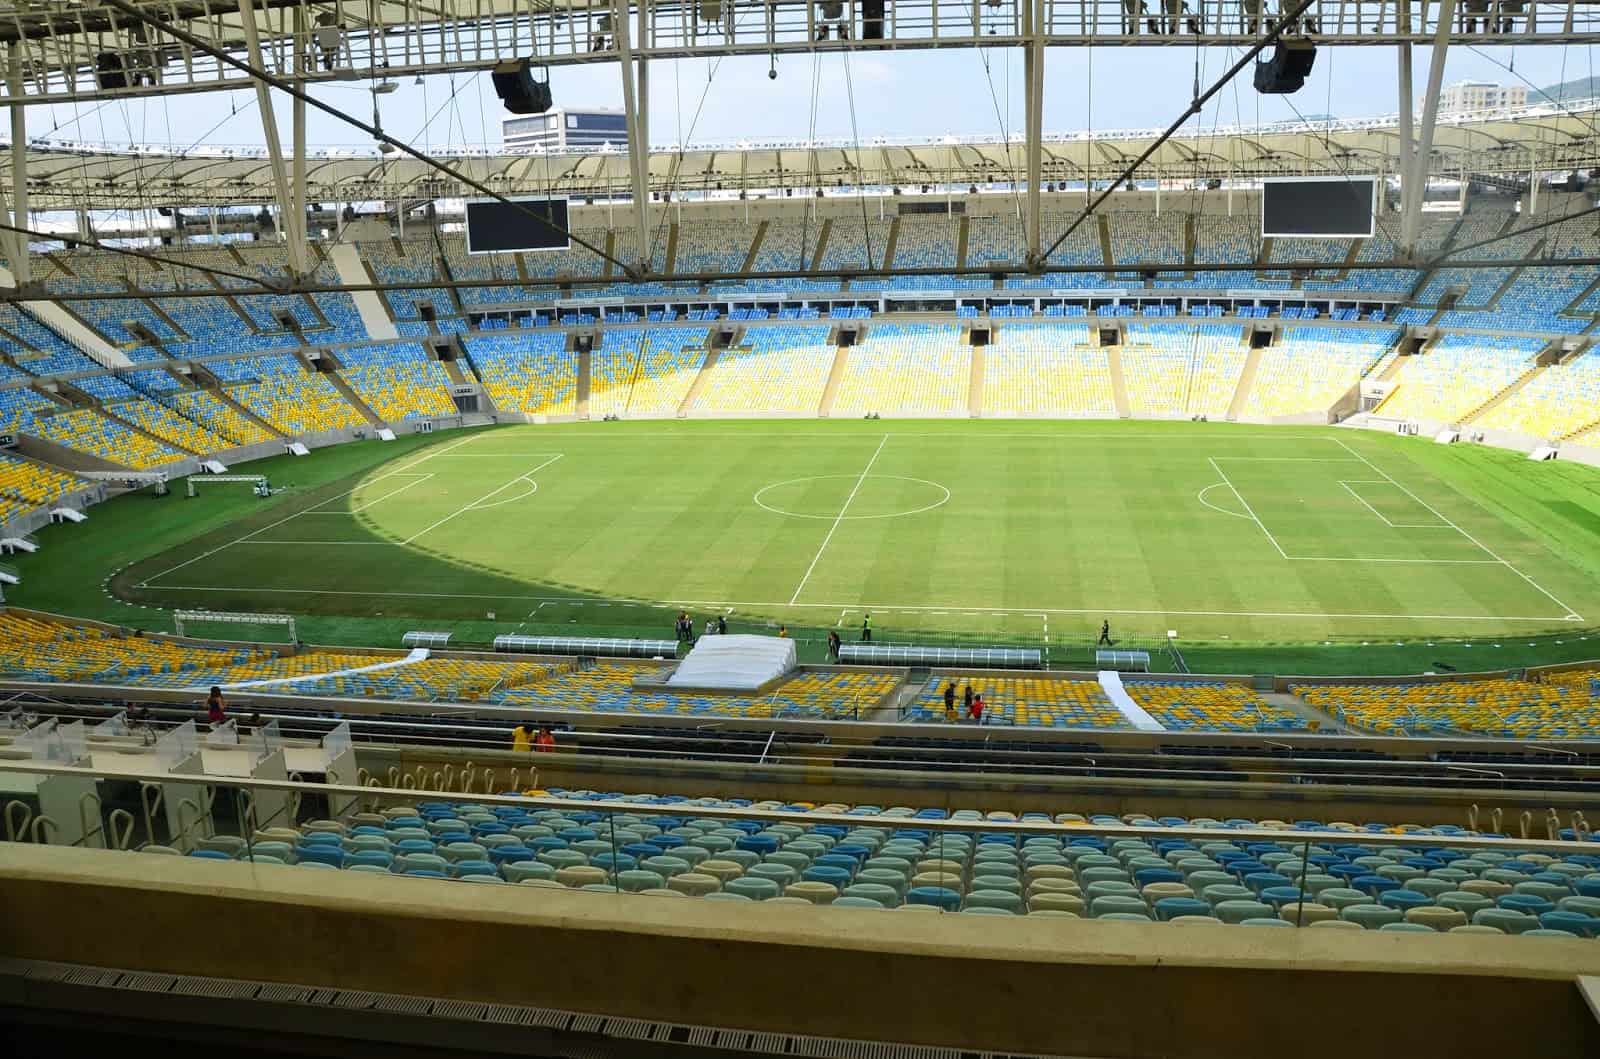 View from the press area at Estádio do Maracanã in Rio de Janeiro, Brazil